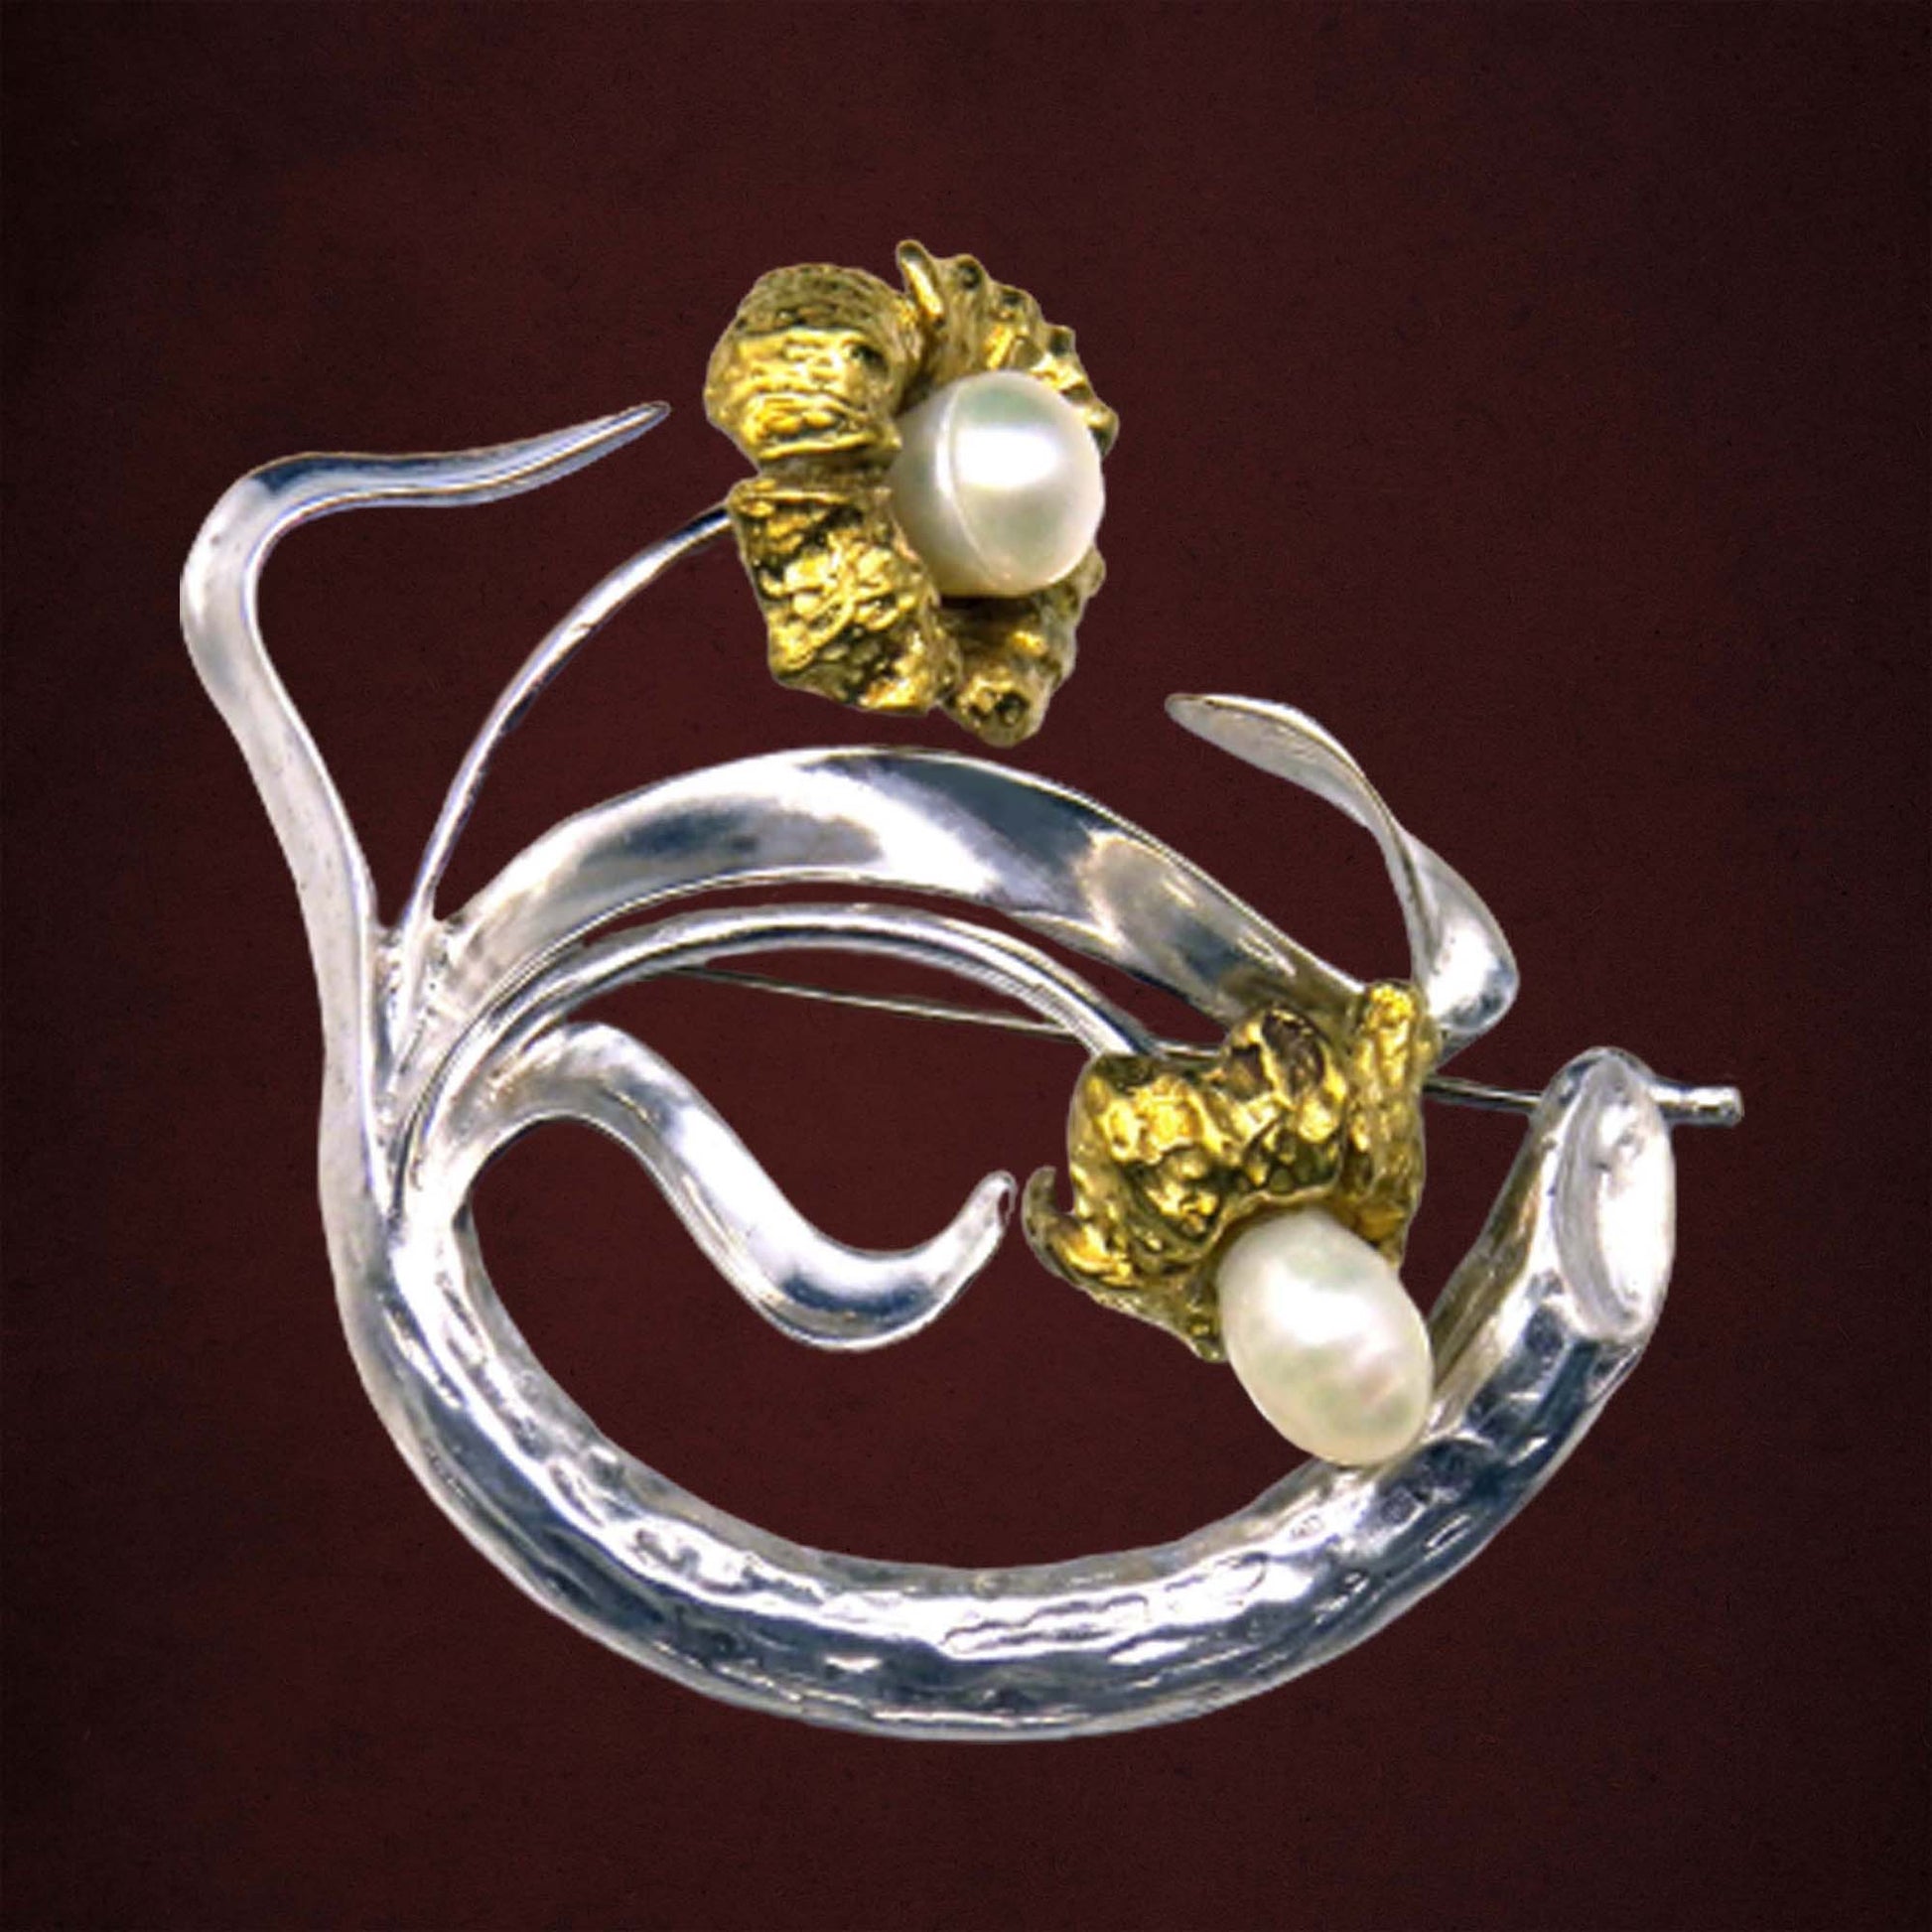 Pearl flower brooch in Art Nouveau style